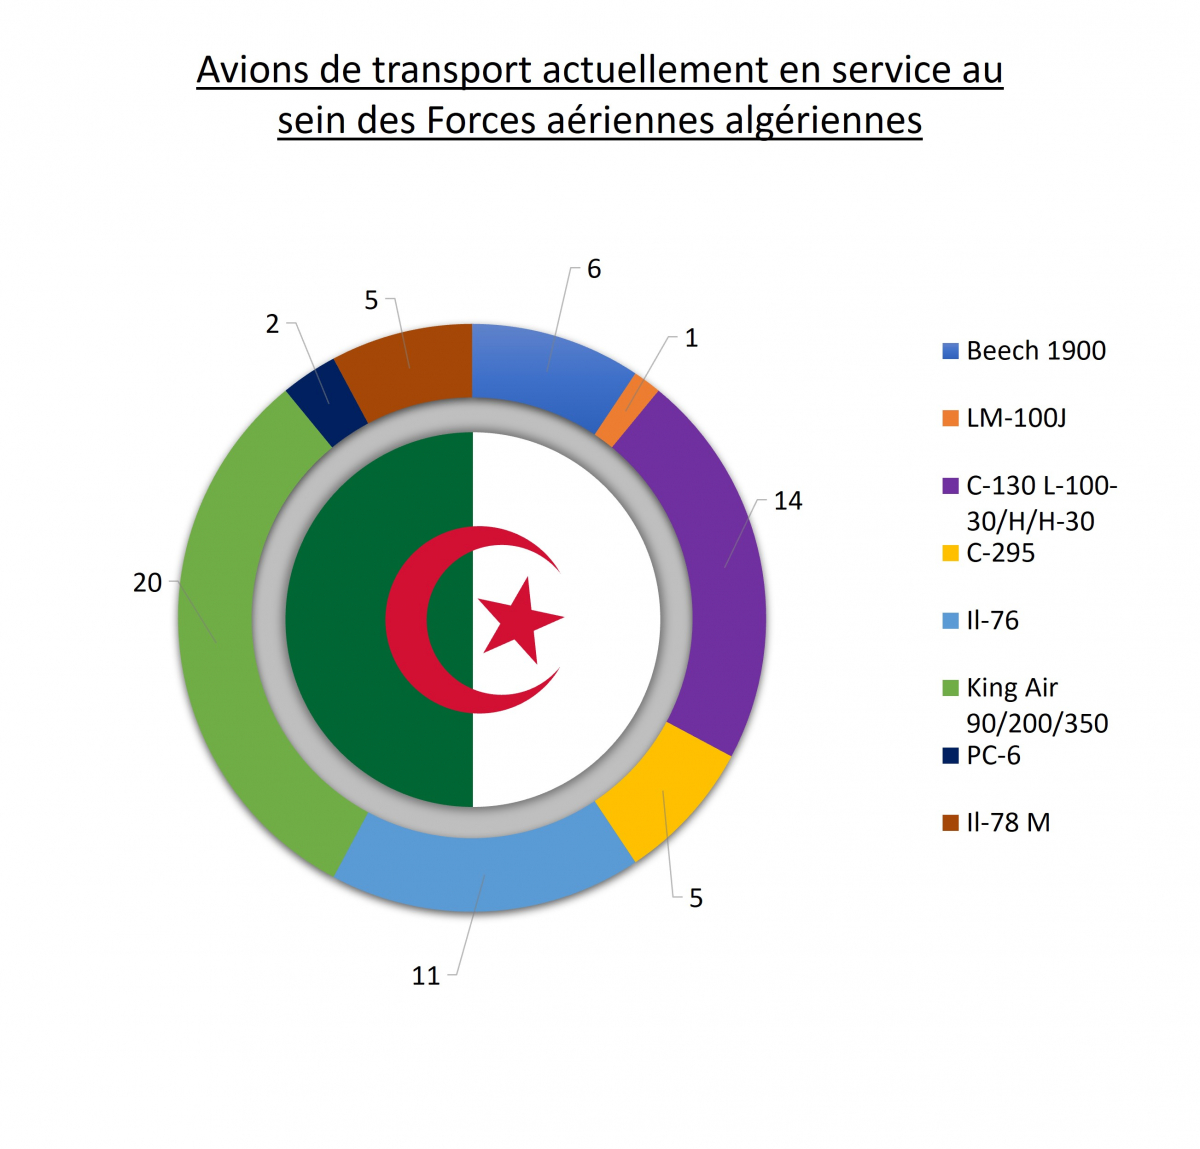 L'Algerie dispose d'une large variété d'appareils occidentaux et russes dans sa flotte.